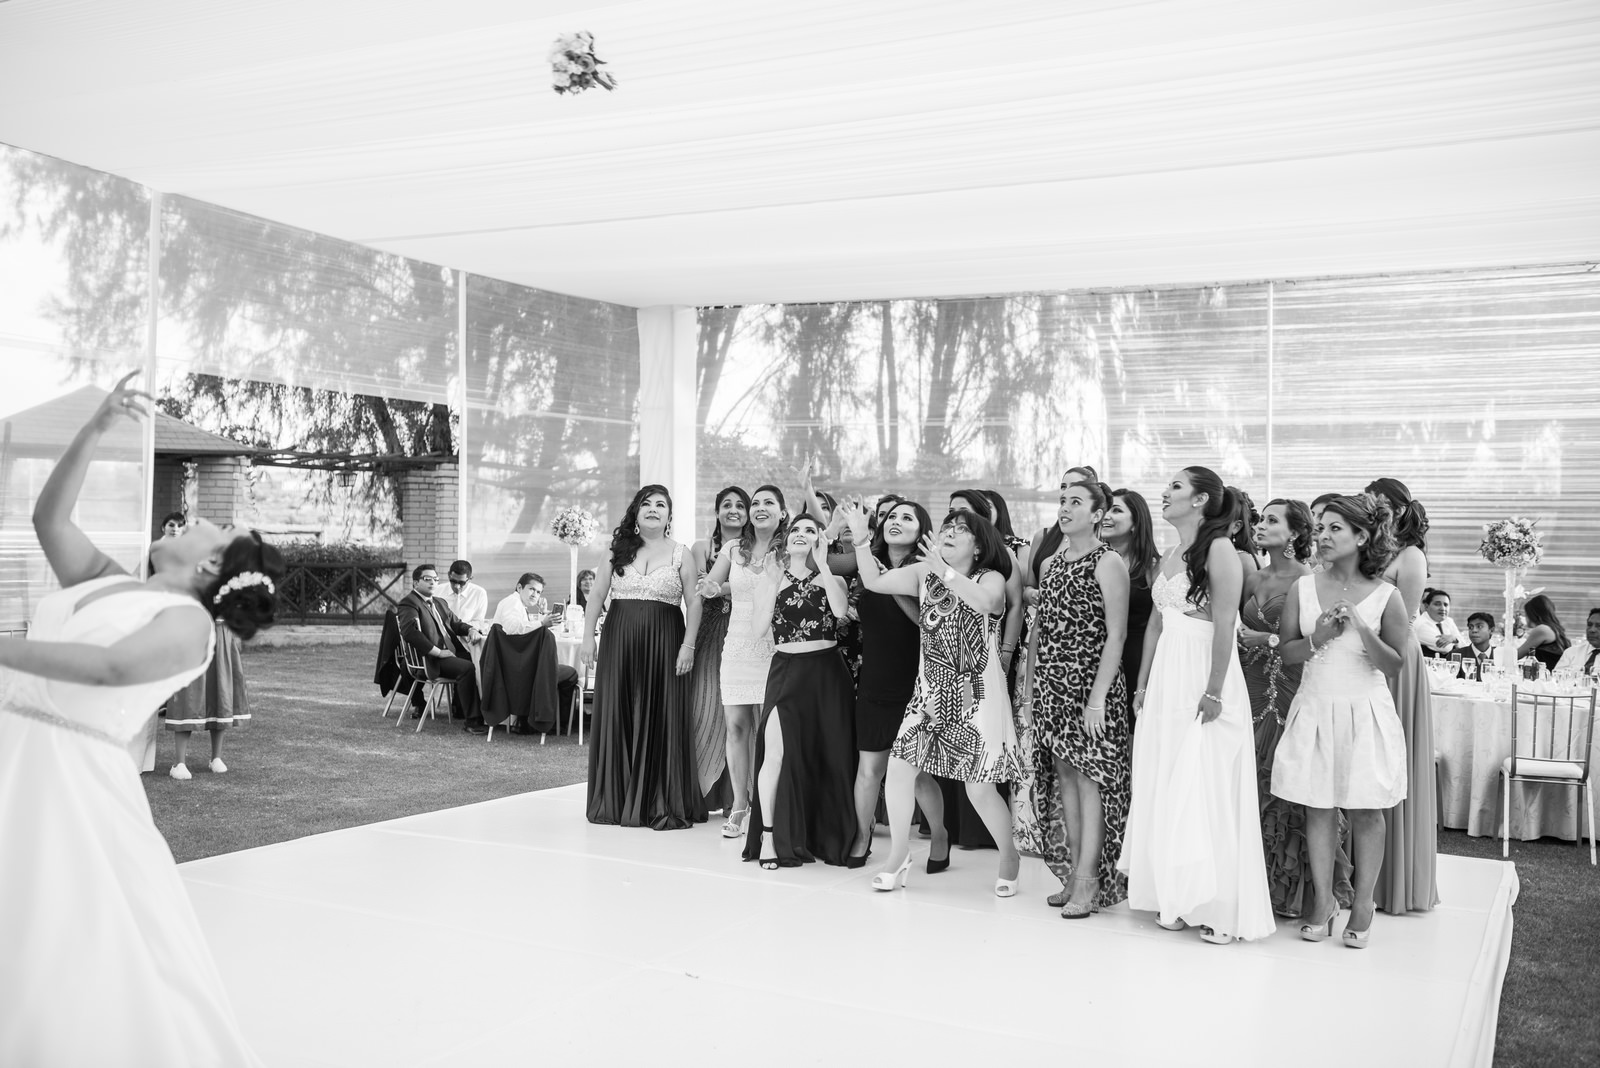 Fiorella Lucho aldo aguilar fotografo fotografia boda sesion novios retrato novia novio arequipa peru 33 hotel lago recepcion